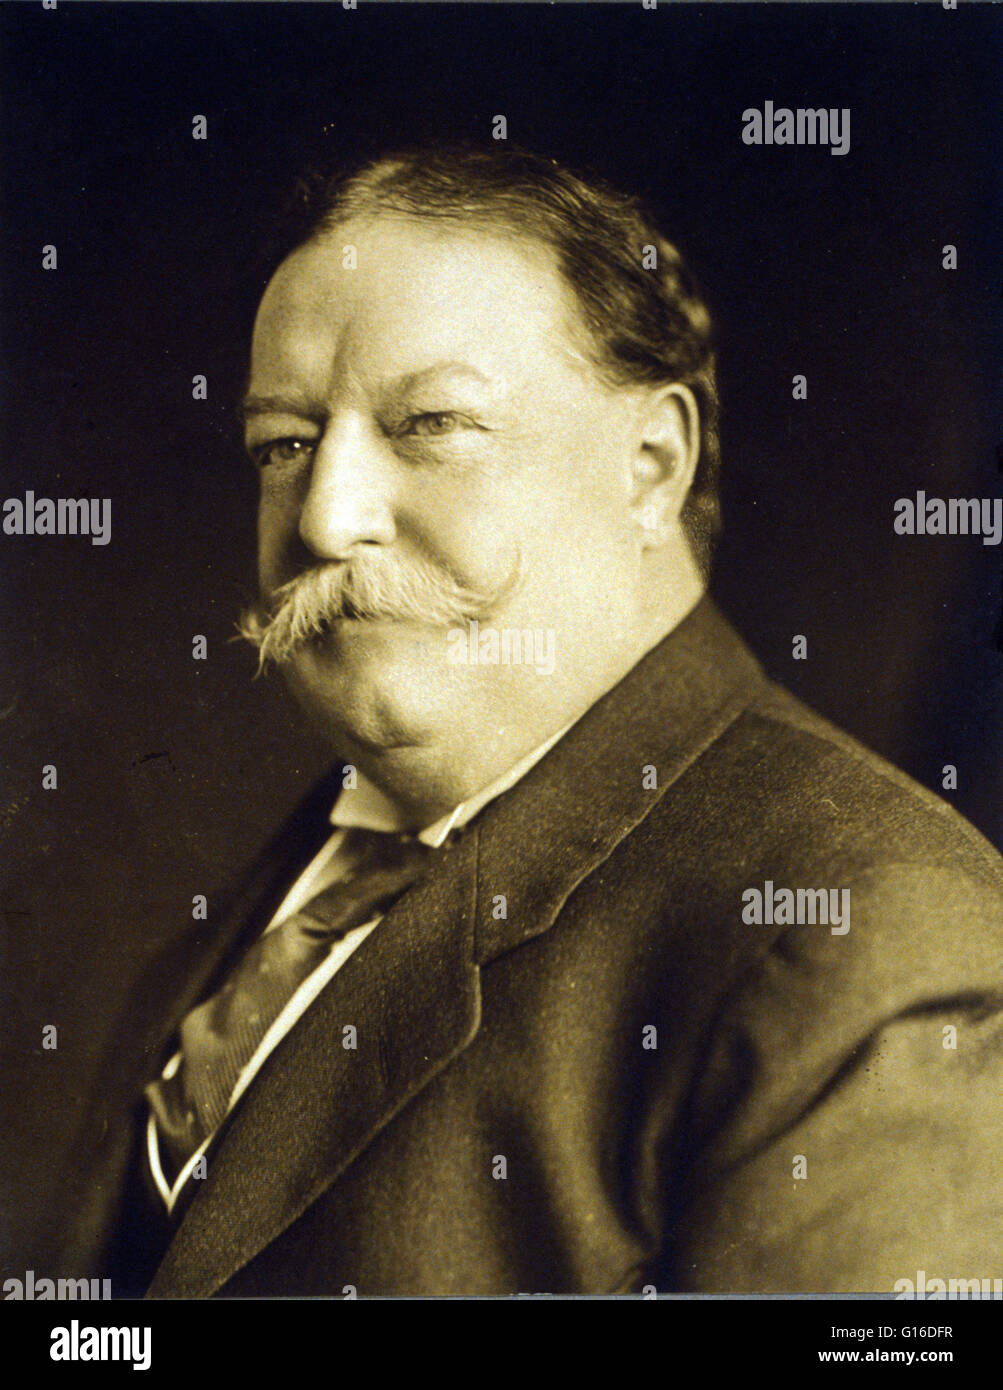 Präsident Taft fotografiert 3. April 1909. Taft (15. September 1857 - 8. März 1930) war der 27. Präsident der Vereinigten Staaten (1909-1913) und später der zehnten Oberrichter der Vereinigten Staaten (1921-1930). Er ist die einzige Person, s zu haben Stockfoto